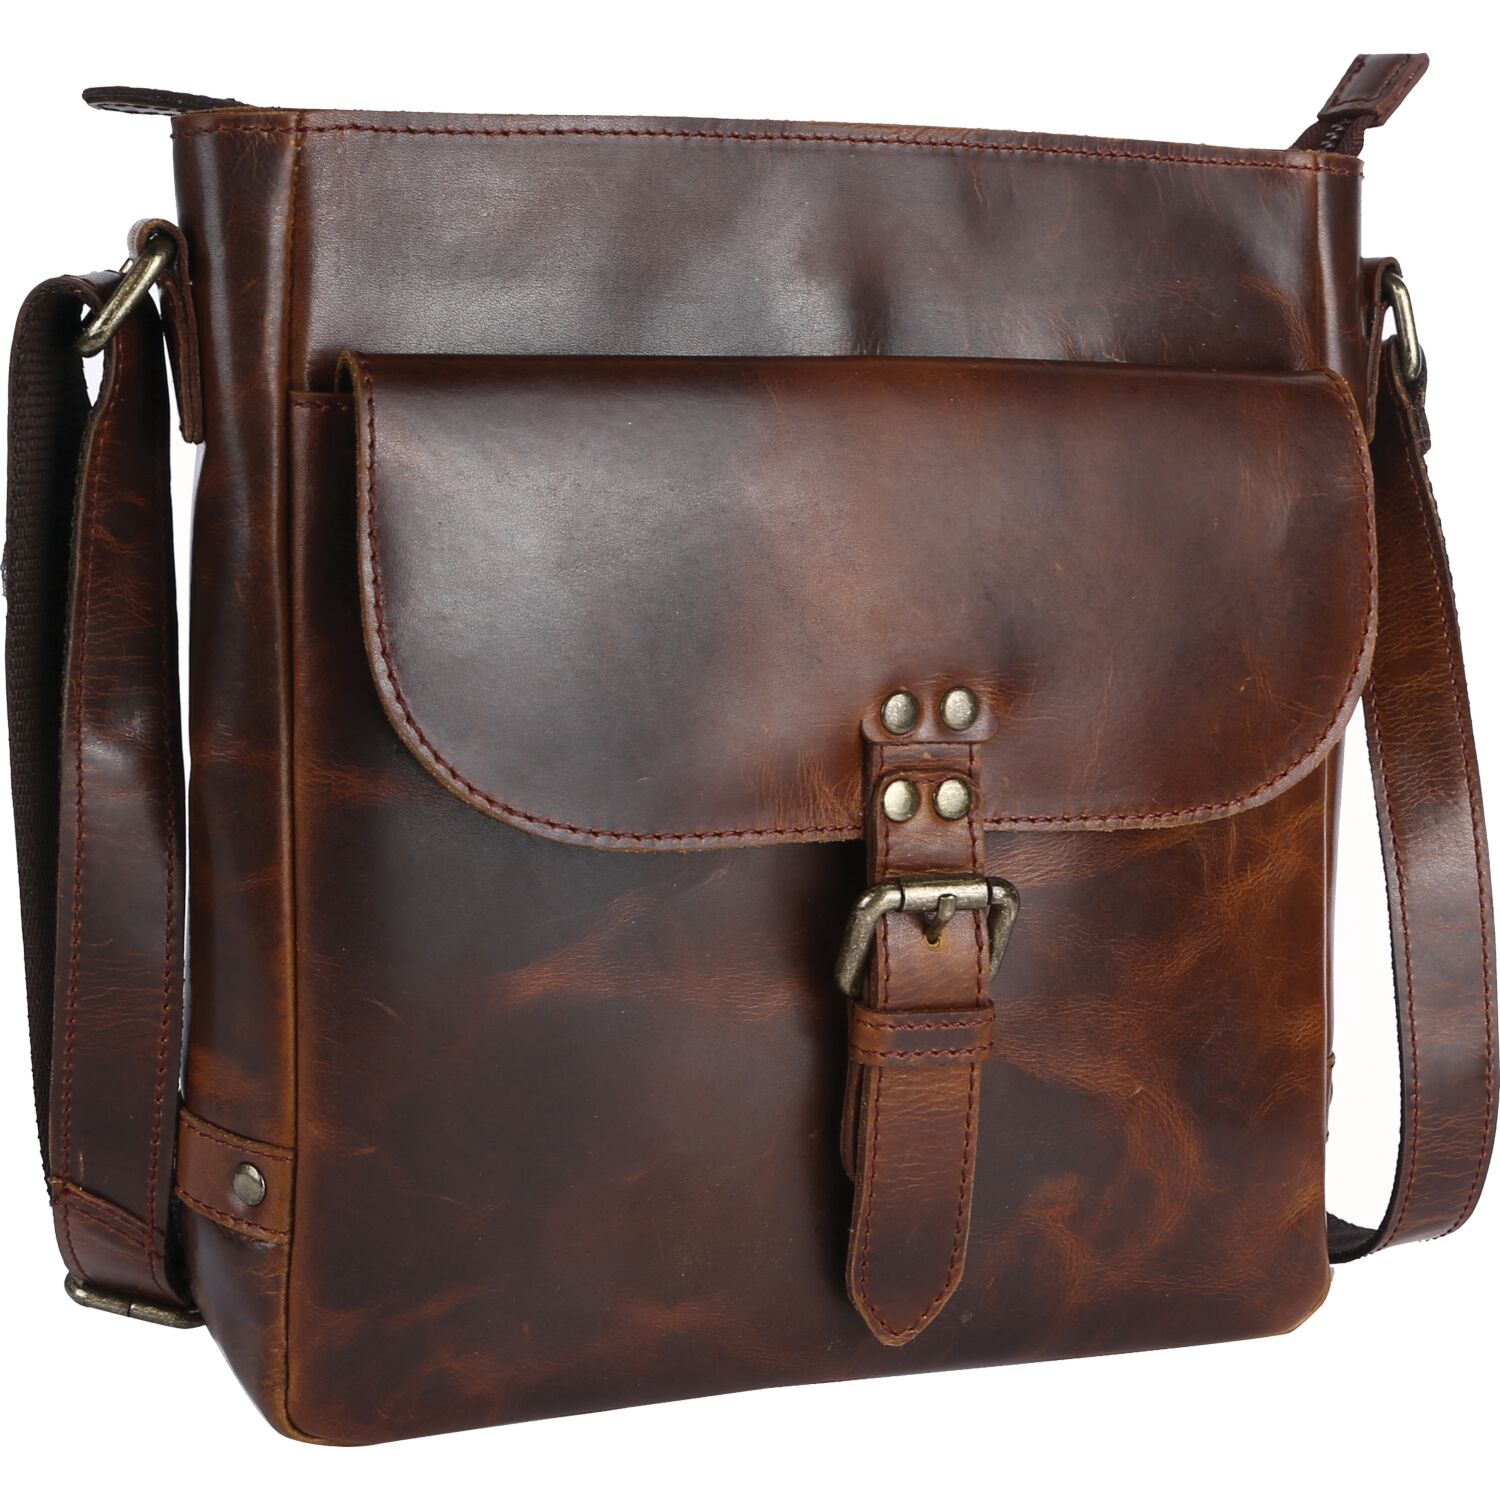 Ashwood Leather Darcy Body Bag - Pediwear Luggage